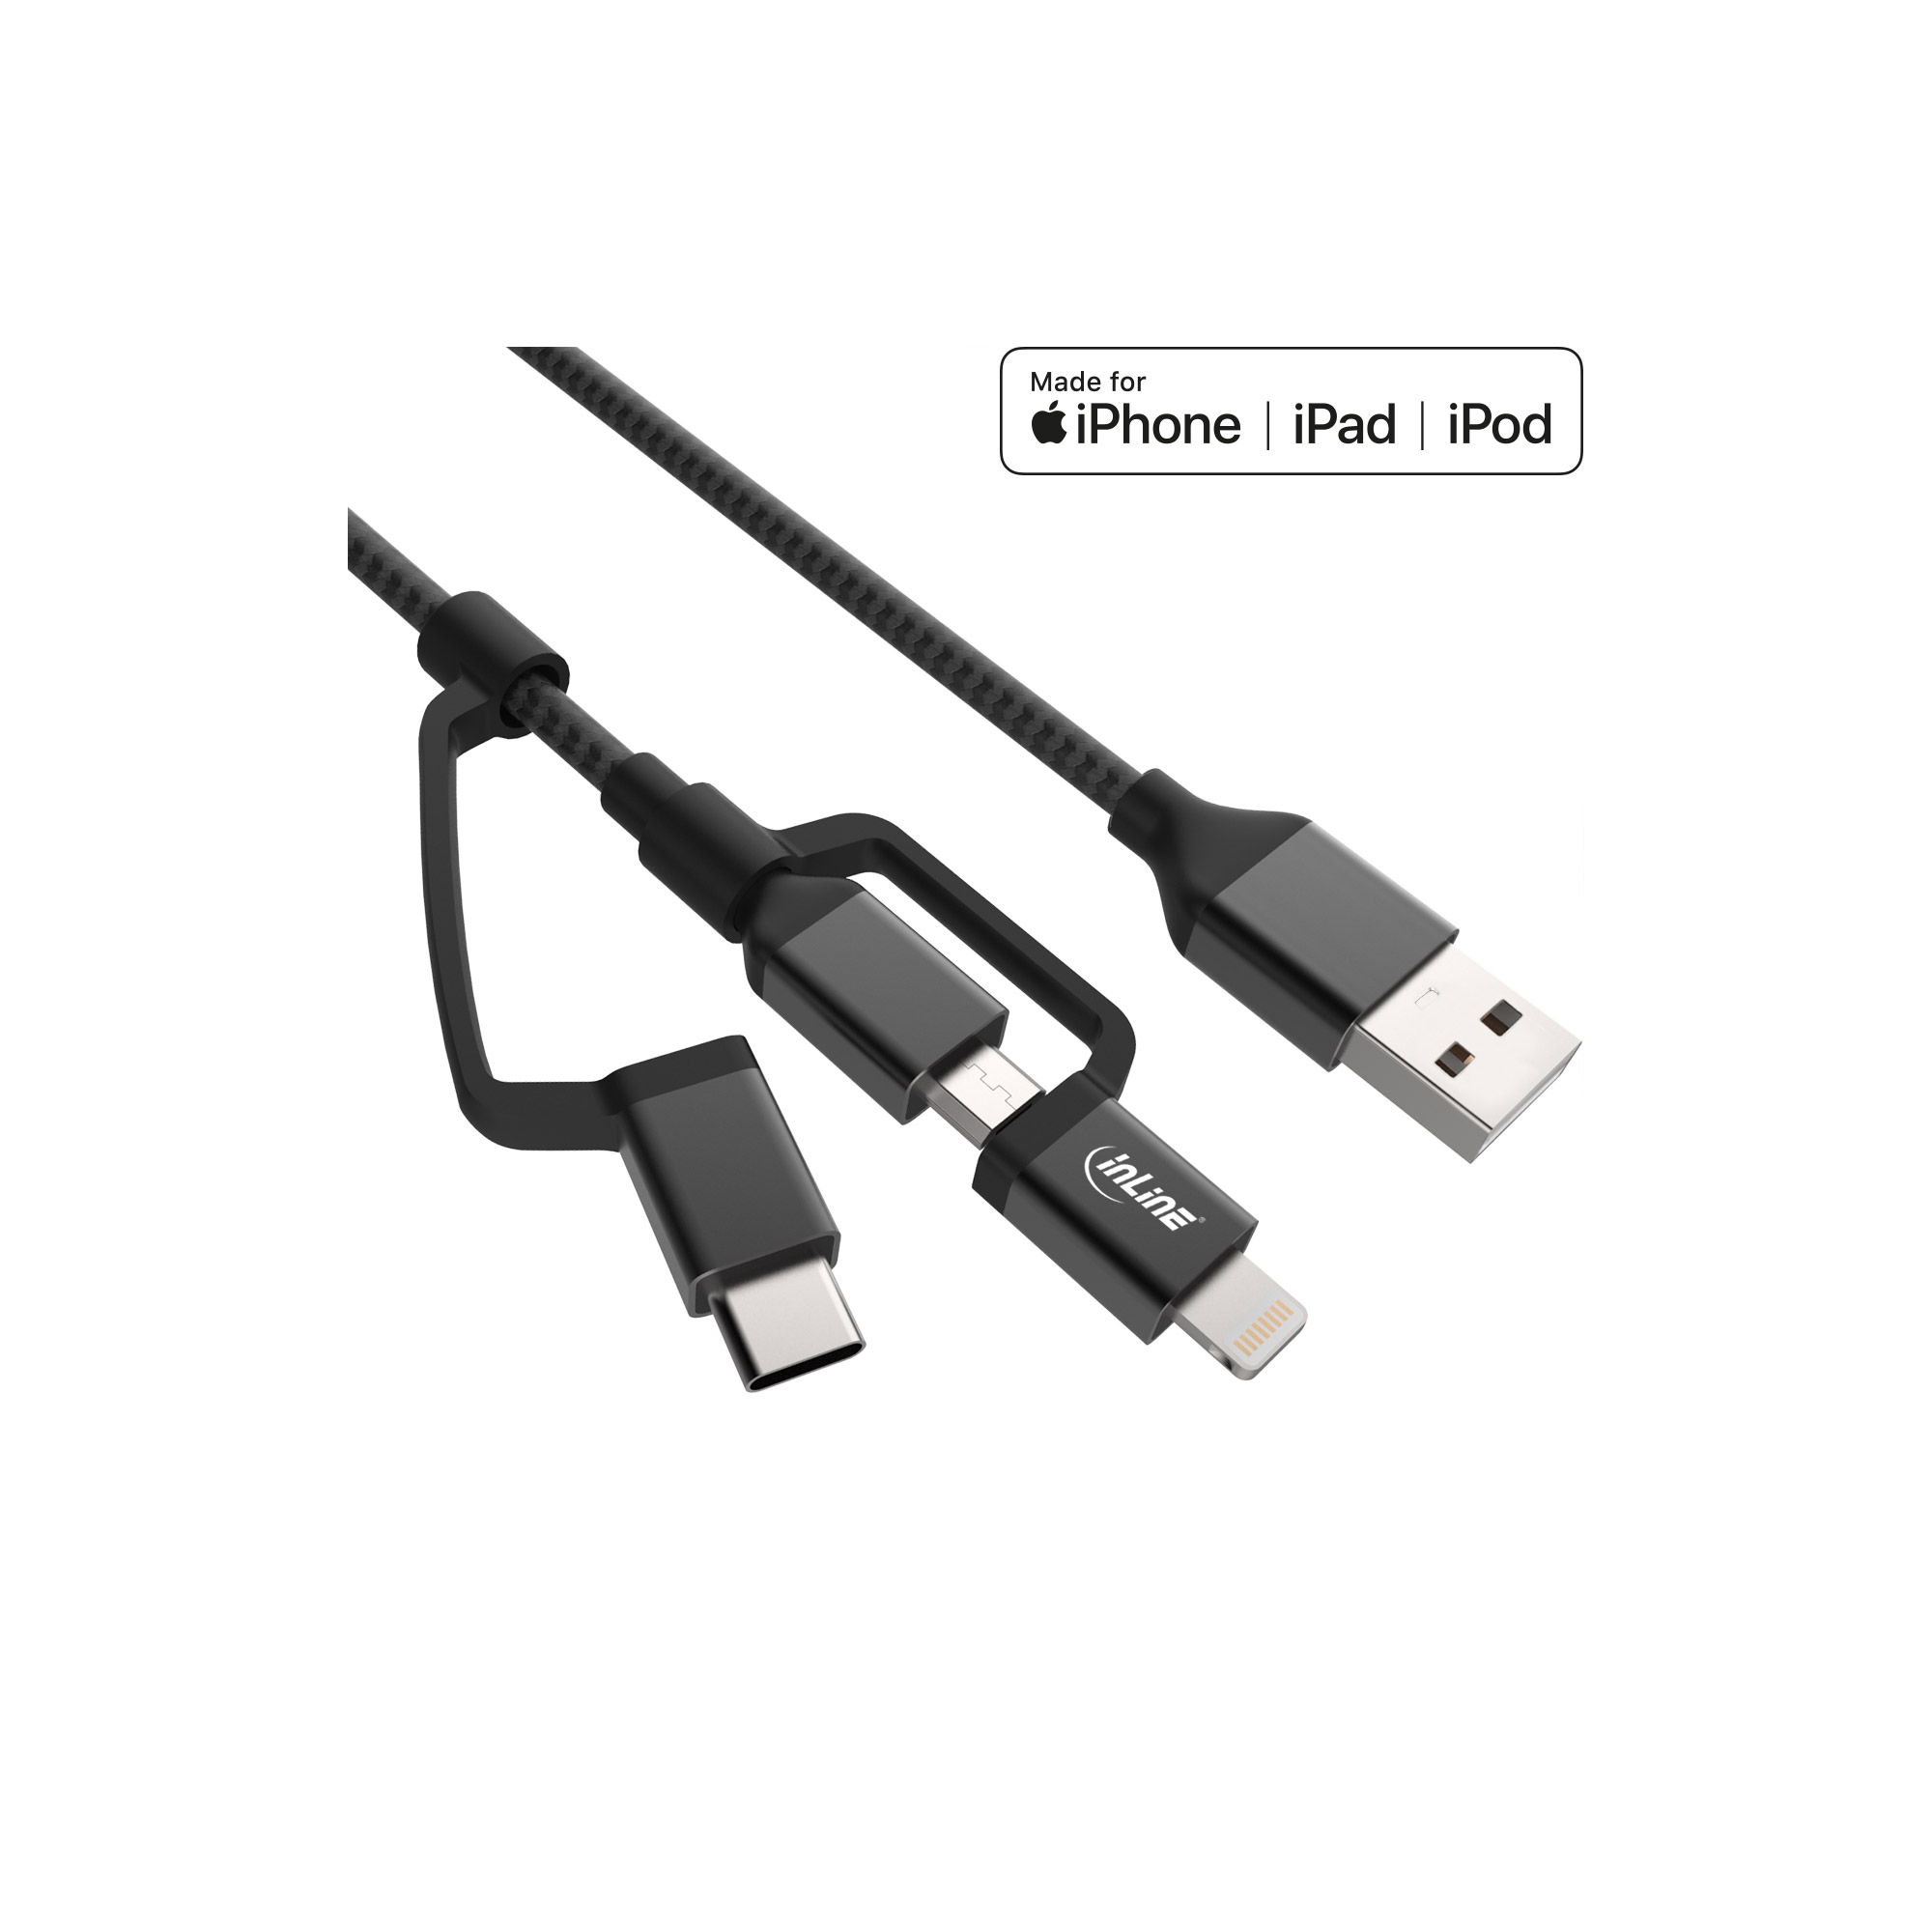 InLine® 3-in1 USB Kabel, Micro-USB, Lightning, USB Typ-C, schwarz/Alu, 1,5m MFi-zertifiziert